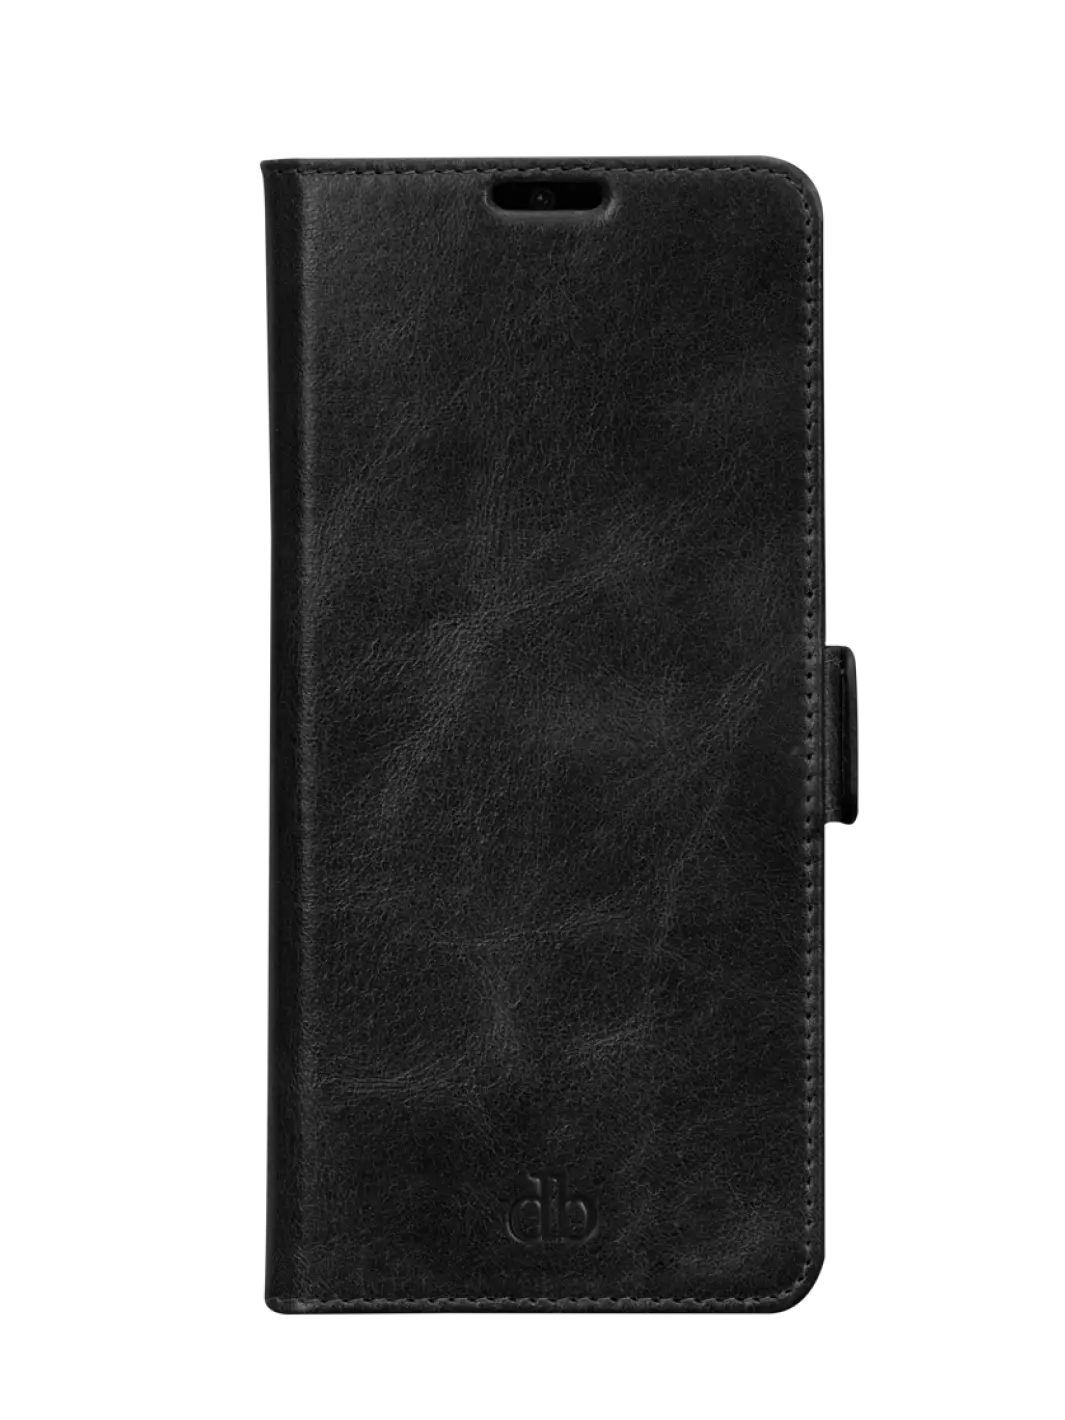 Copenhagen Slim Black Sony Xperia 5 III Phone Cases